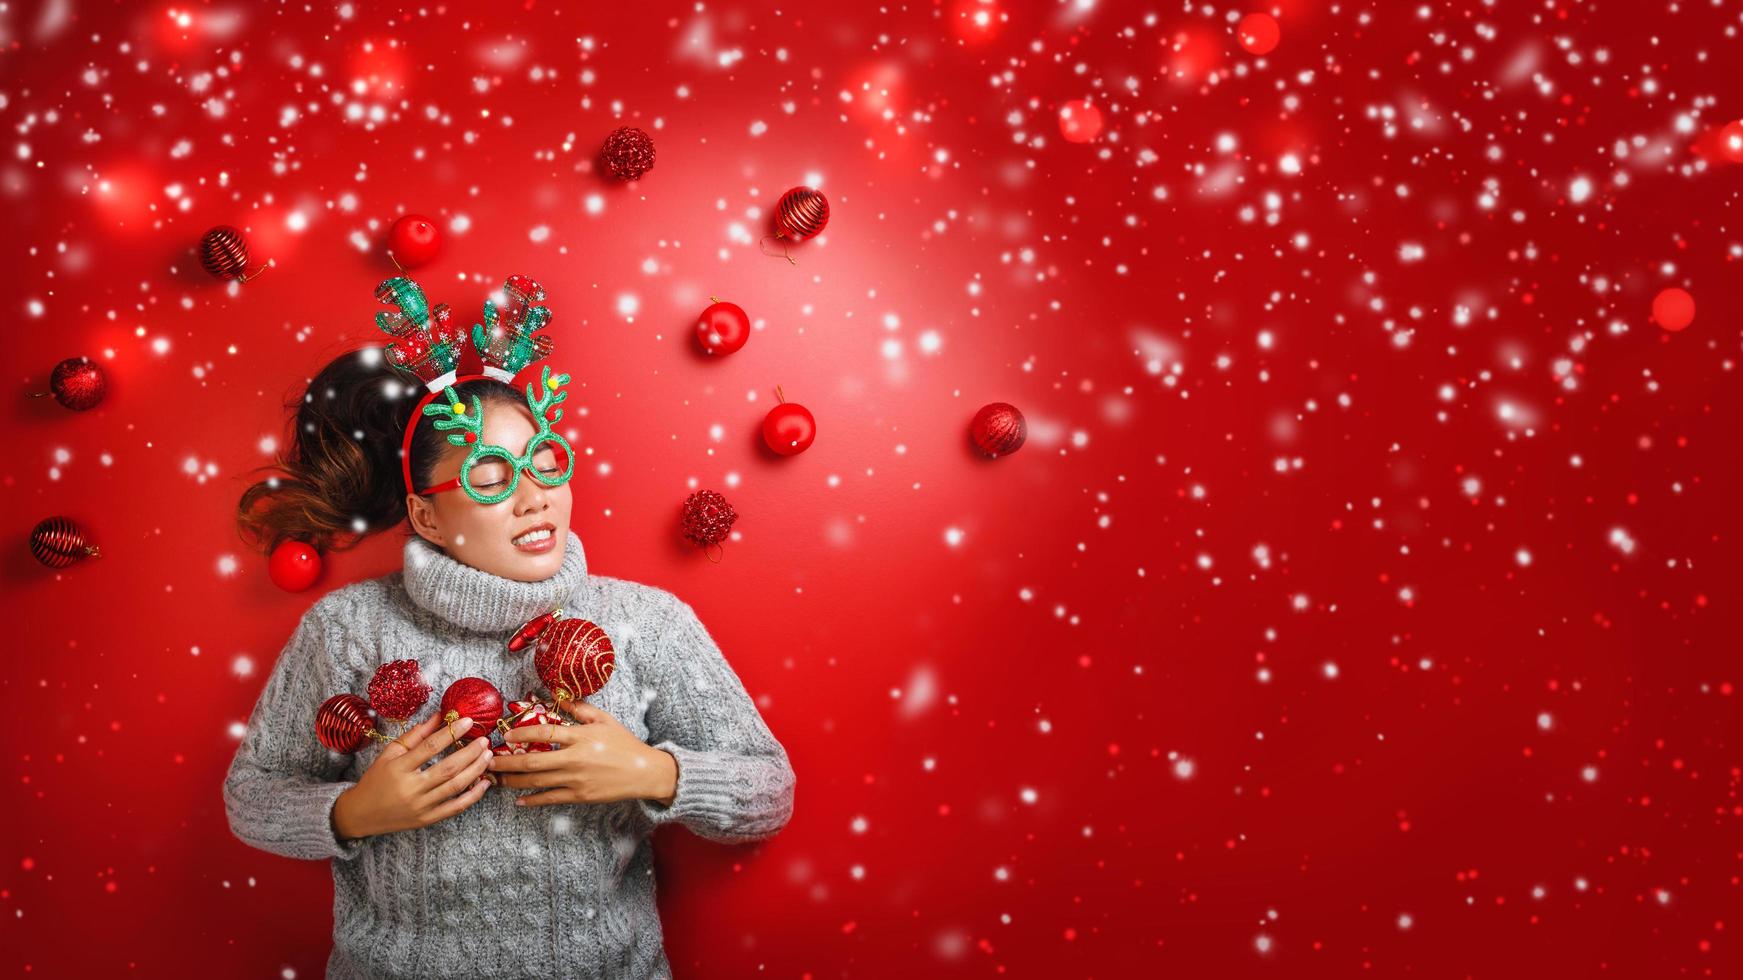 navidad año nuevo. mujer joven vestida con un suéter cálido con apoyos bola roja con adornos navideños en vacaciones sobre fondo rojo brillante. concepto feliz navidad. foto